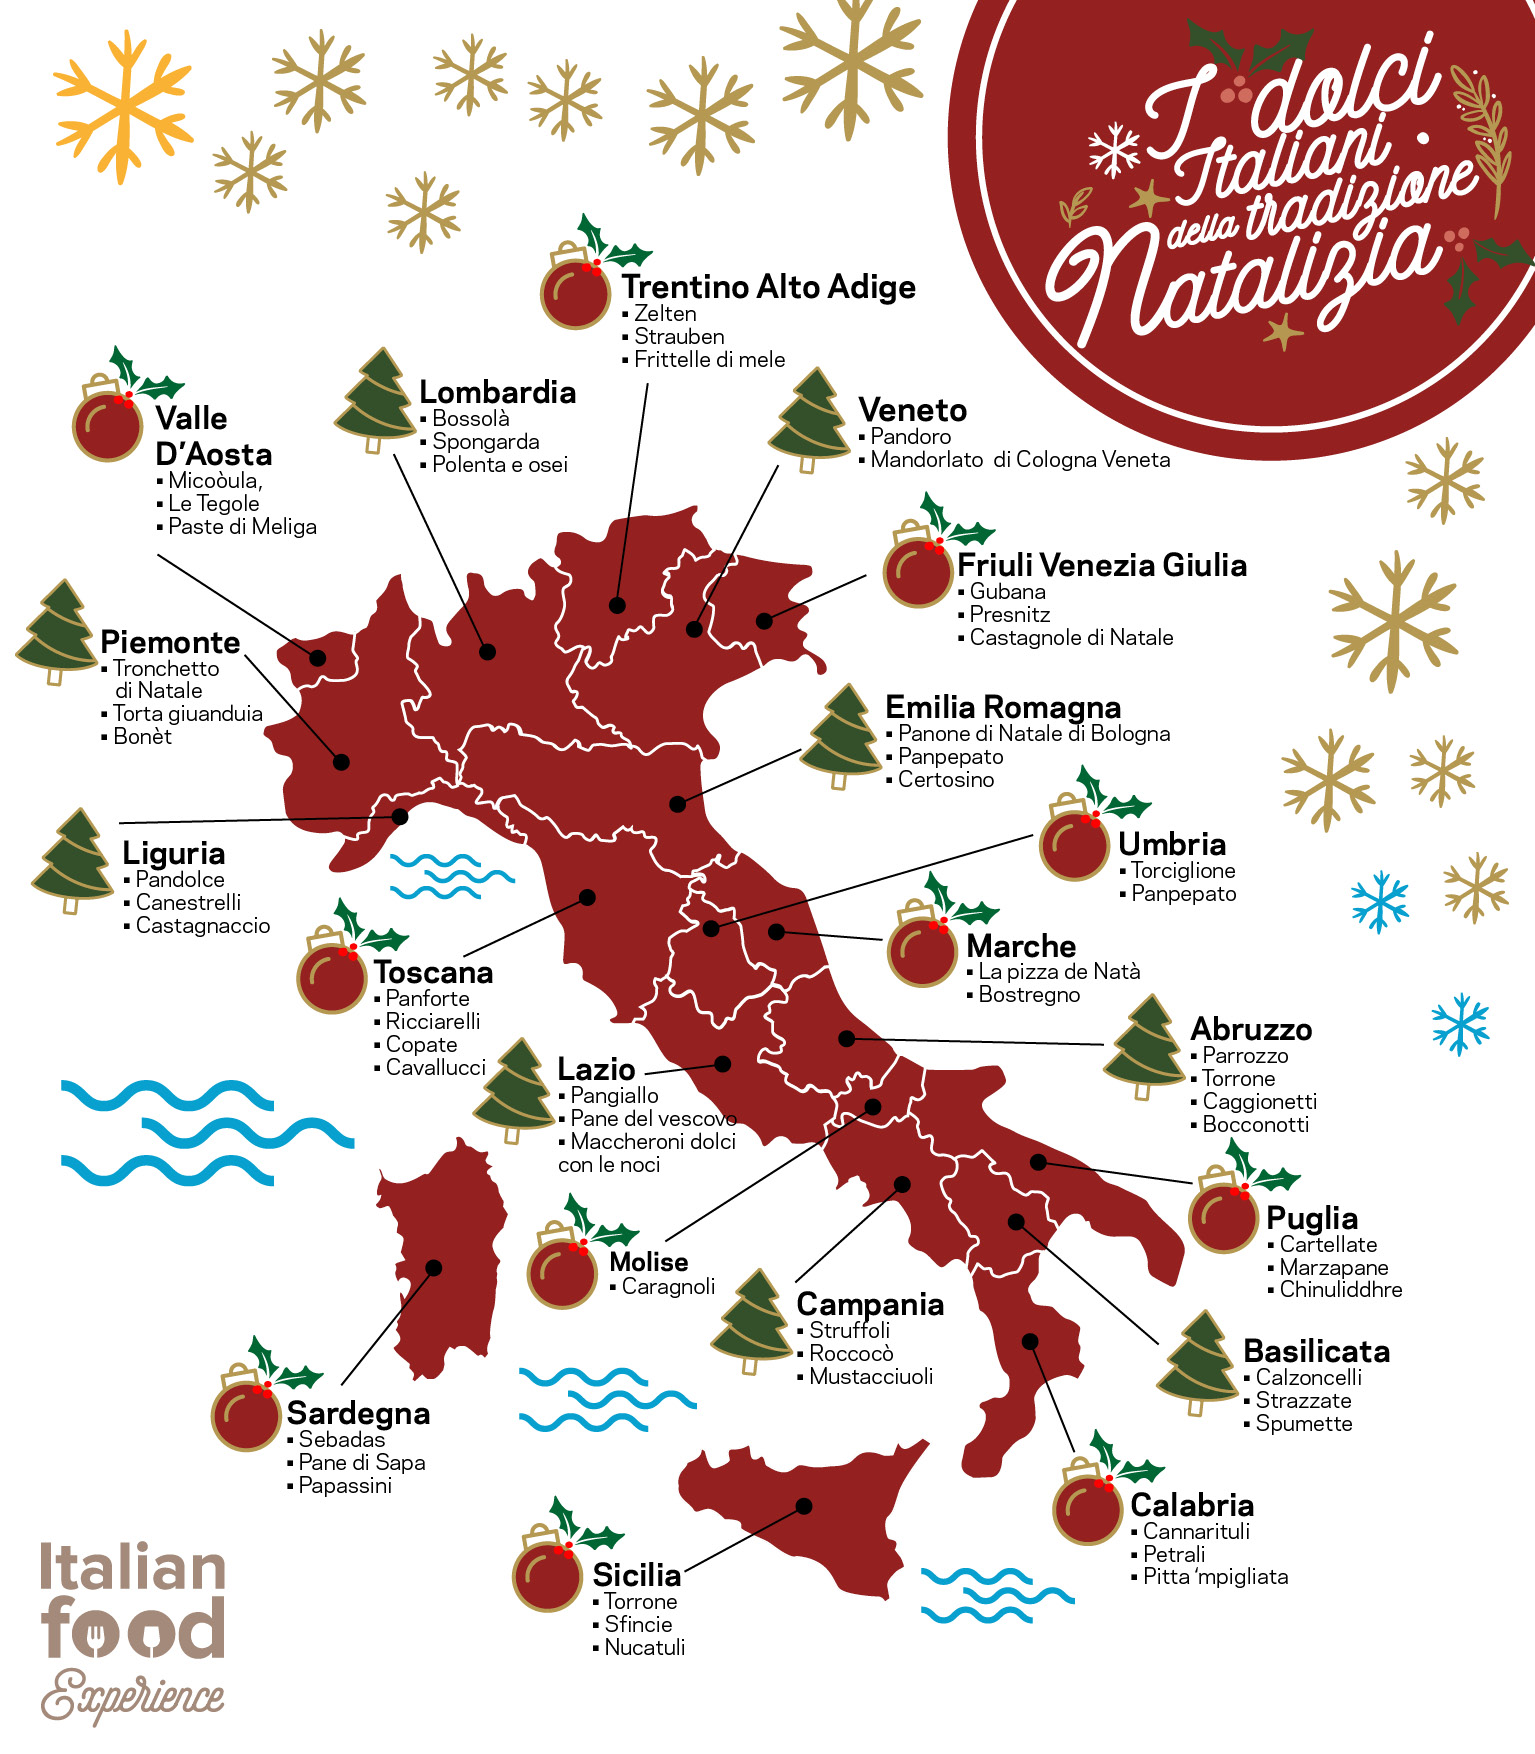 Dolci Tipici Di Natale Italiani.Dolci Tipici Natalizi In Italia Regione Per Regione